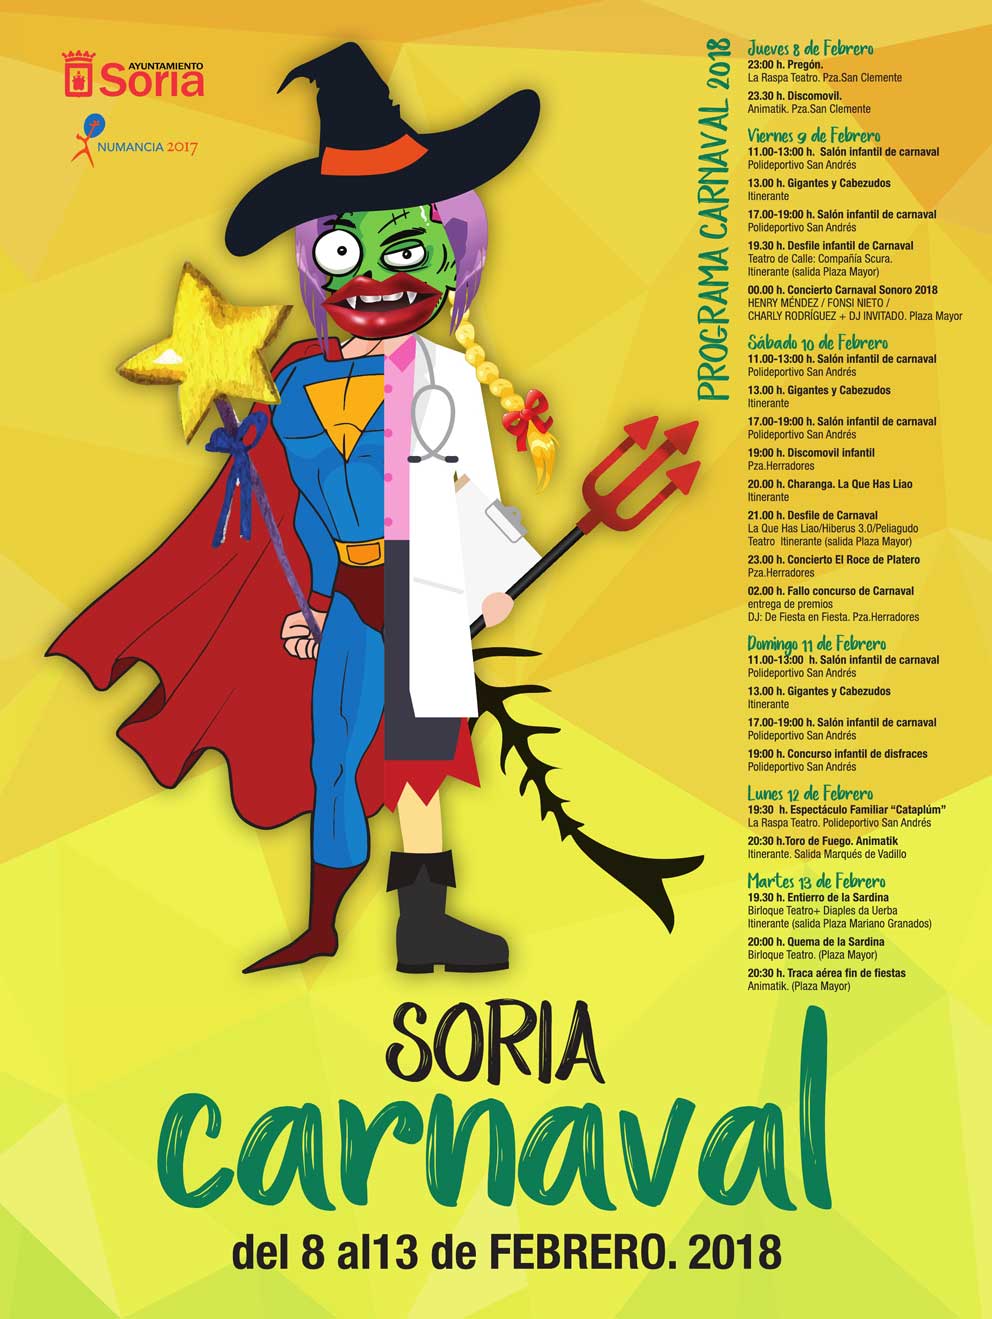 Llegan los carnavales! Incluye un fondo carnaval en tu fiesta - Blog